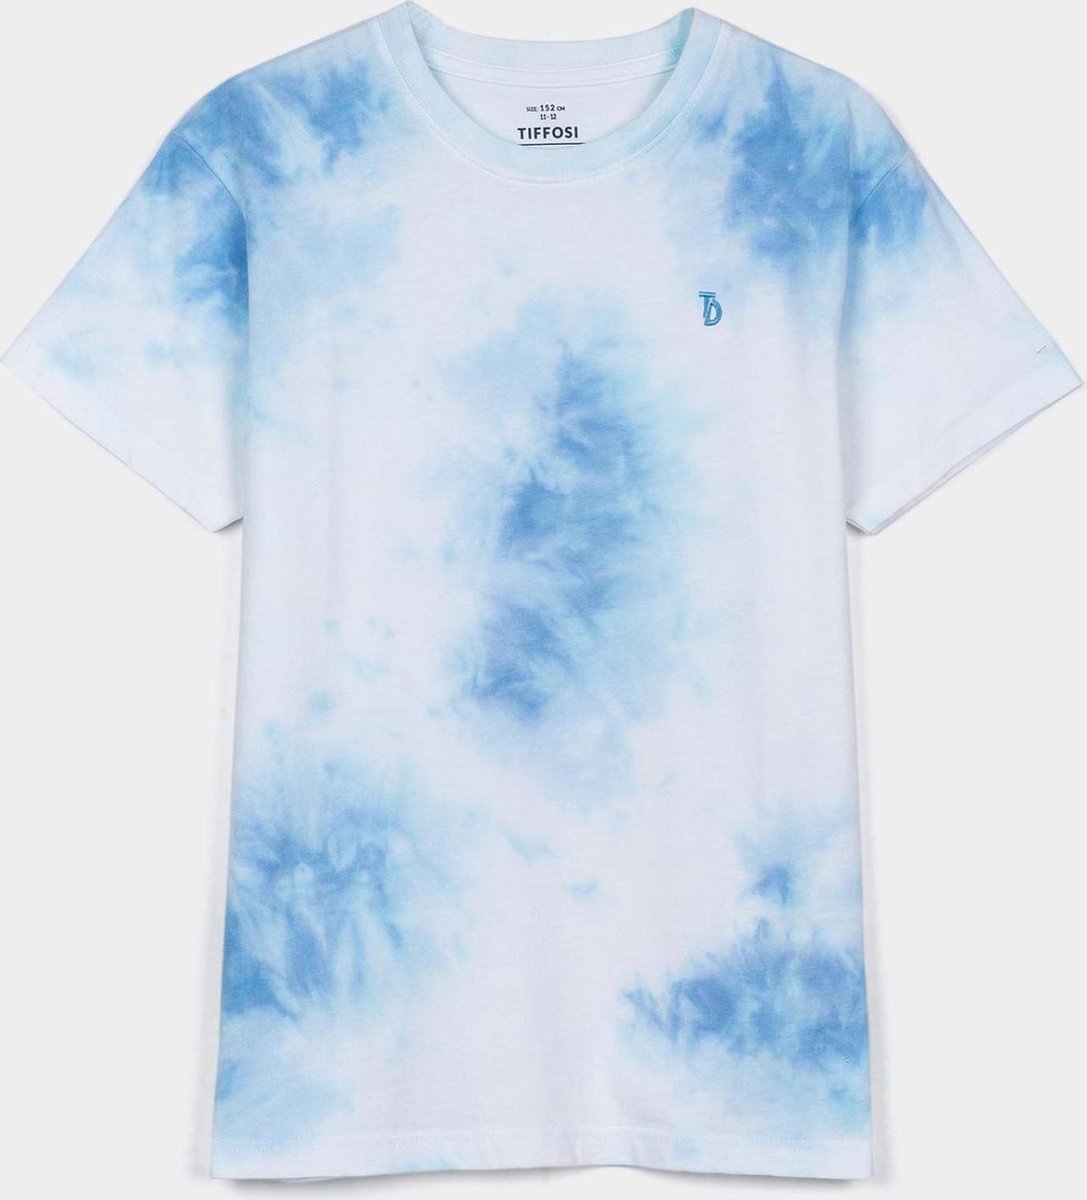 Tiffosi T-shirt jongens wit/blauw tie dye maat 176